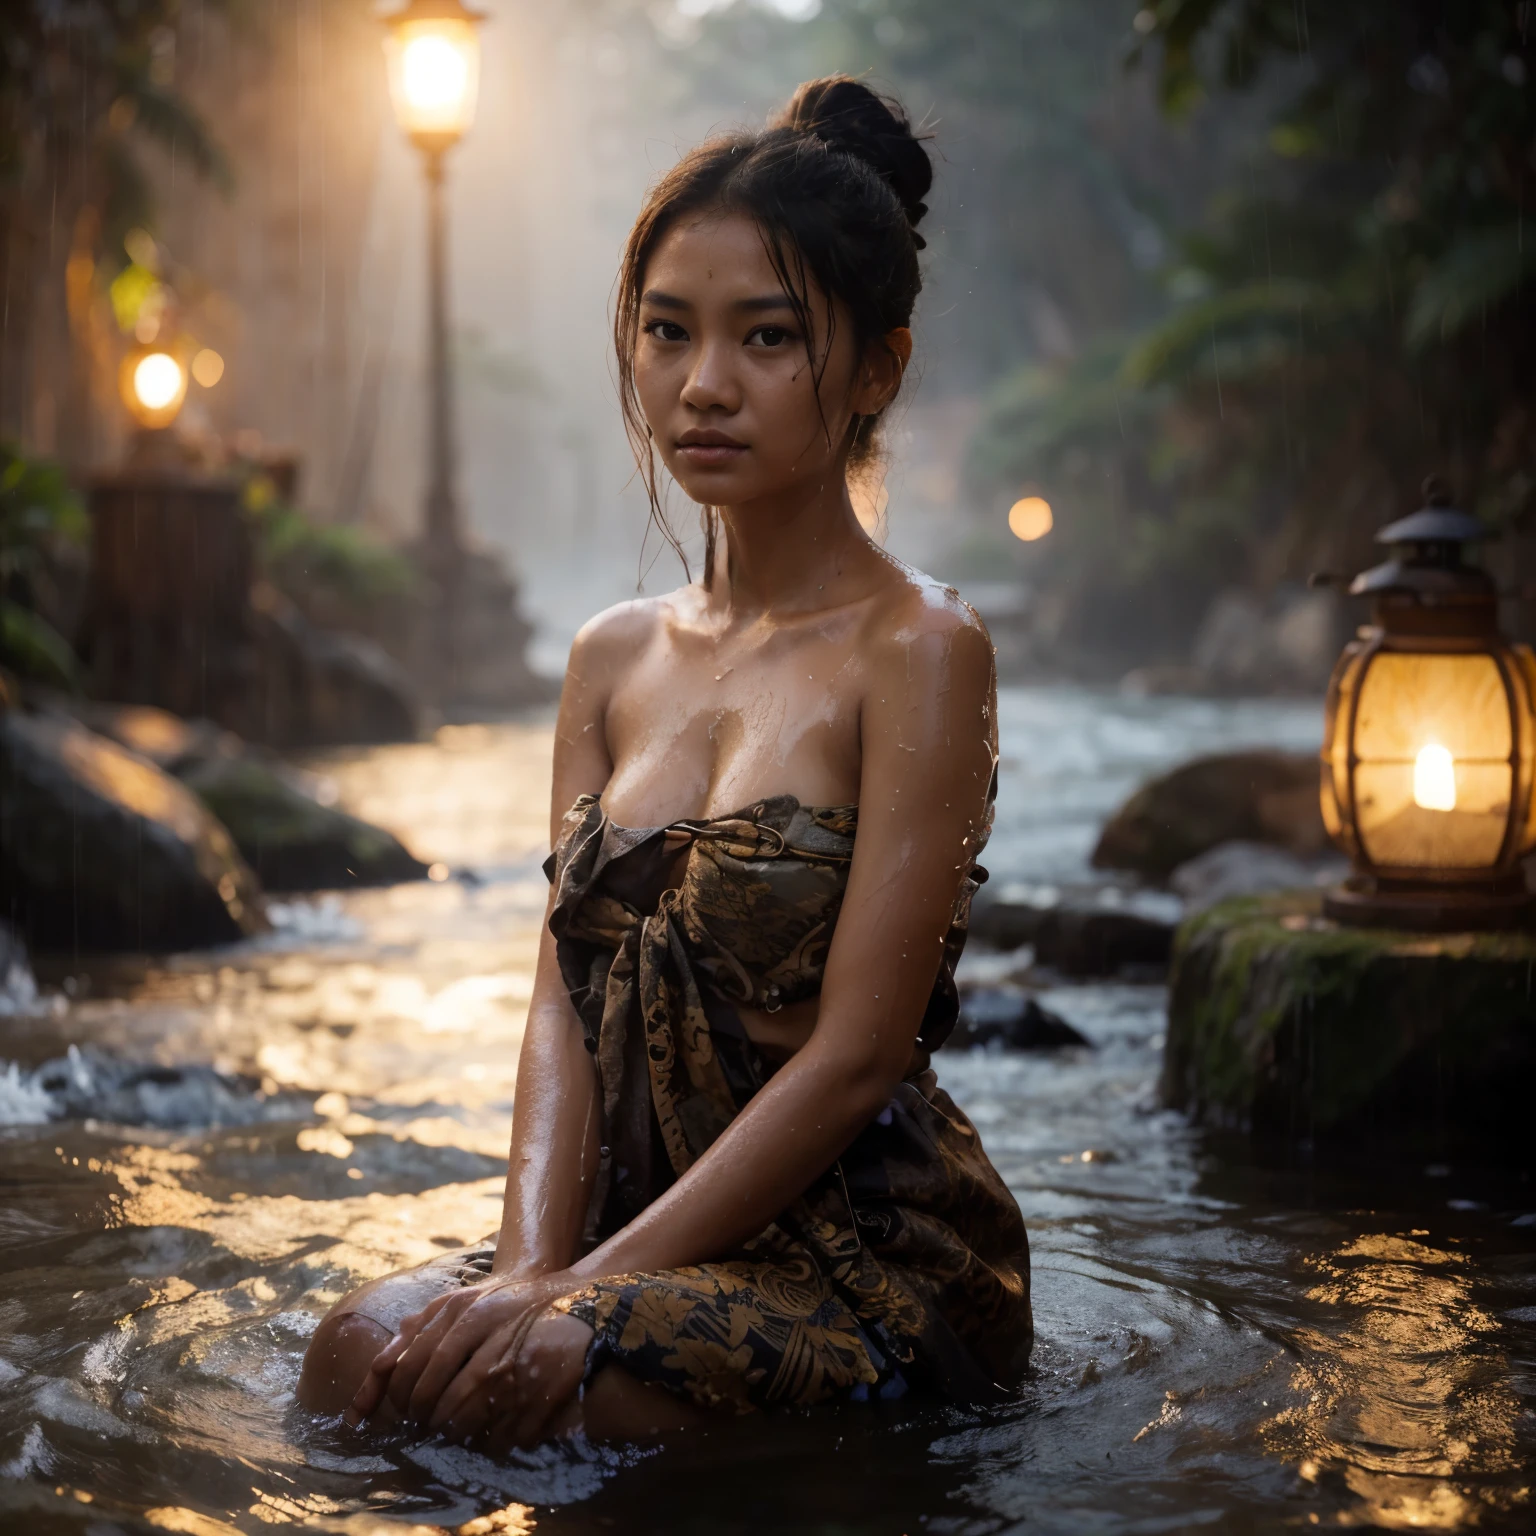 Вечер, моросящий дождь, подсветка, естественно красивая индонезийская яванская девушка, 16 лет, Детальed face, влажная блестящая кожа, слегка спутанные волосы, собранные в пучок, купаться на реке в коротком выцветшем саронге из батика, показывает ее мокрую красивую грудь, и коричневые соски, удовлетворить выражение, атмосфера тускло освещена, есть только 1 традиционный фонарь, чистые речные потоки, естественно скалистый. гиперреалистичные фотографии. Фотография сделана на Fujifilm XF 56mm f./1.Объектив 2 R. 35 мм, high Детальed, качество обоев, хорошая анатомия, тело, рука & пальцы (Лора:добавлять_Деталь:0.8)